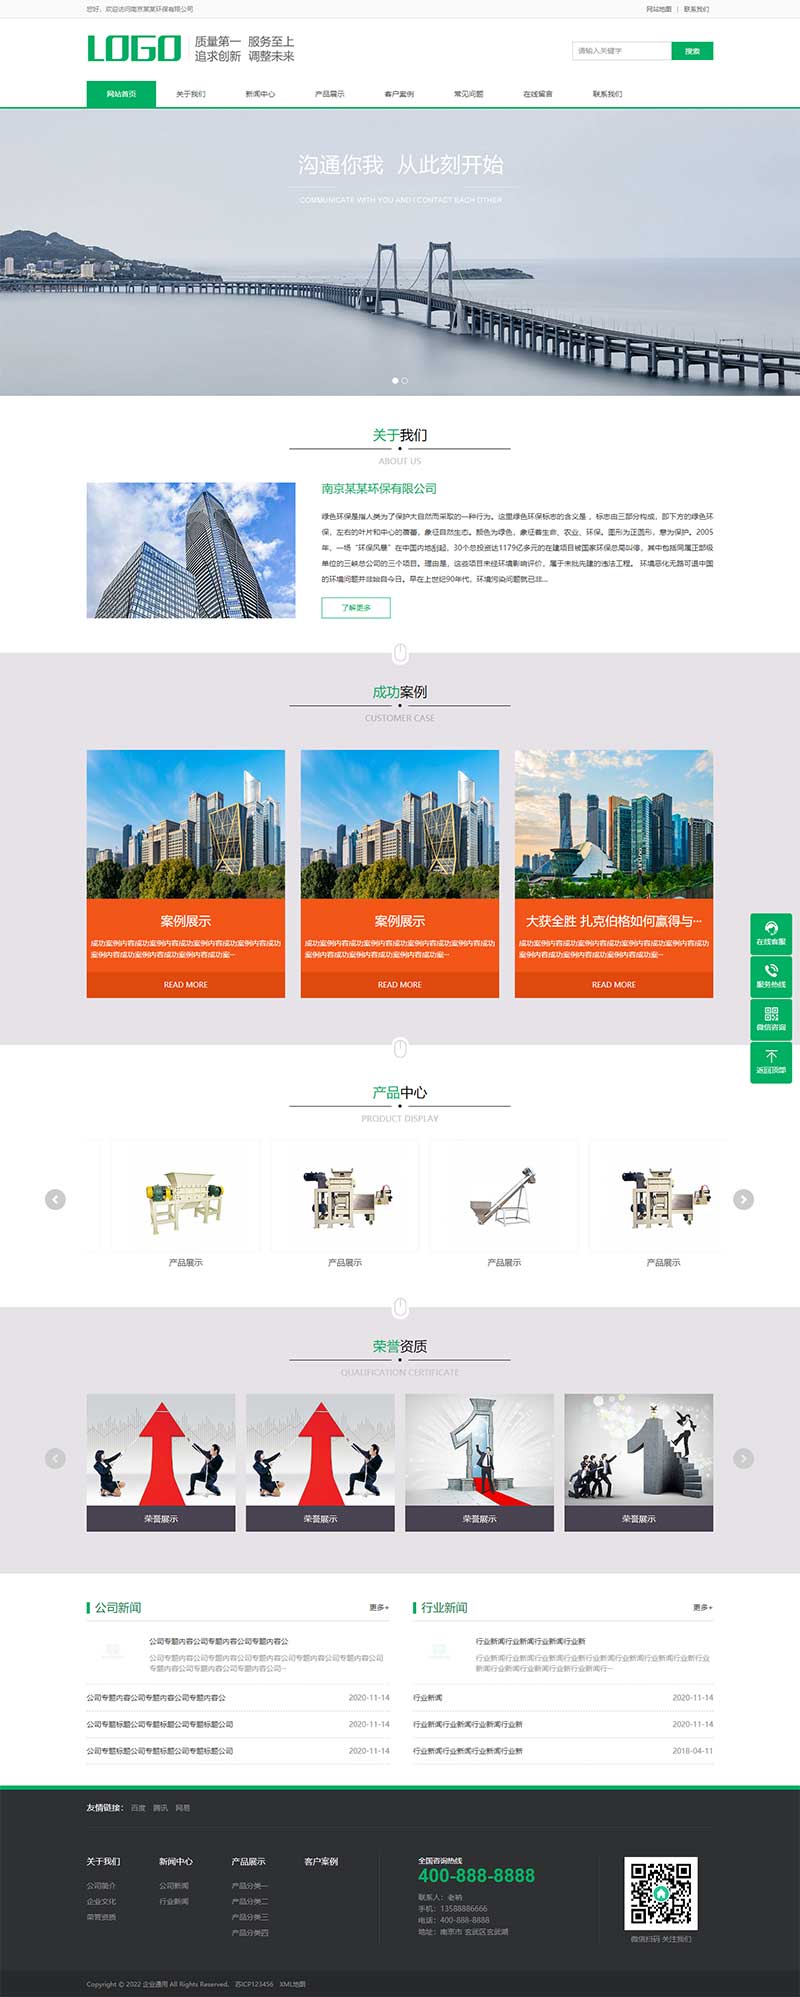 pbootcms绿色环保通用企业网站模板 建筑通用行业网站源码